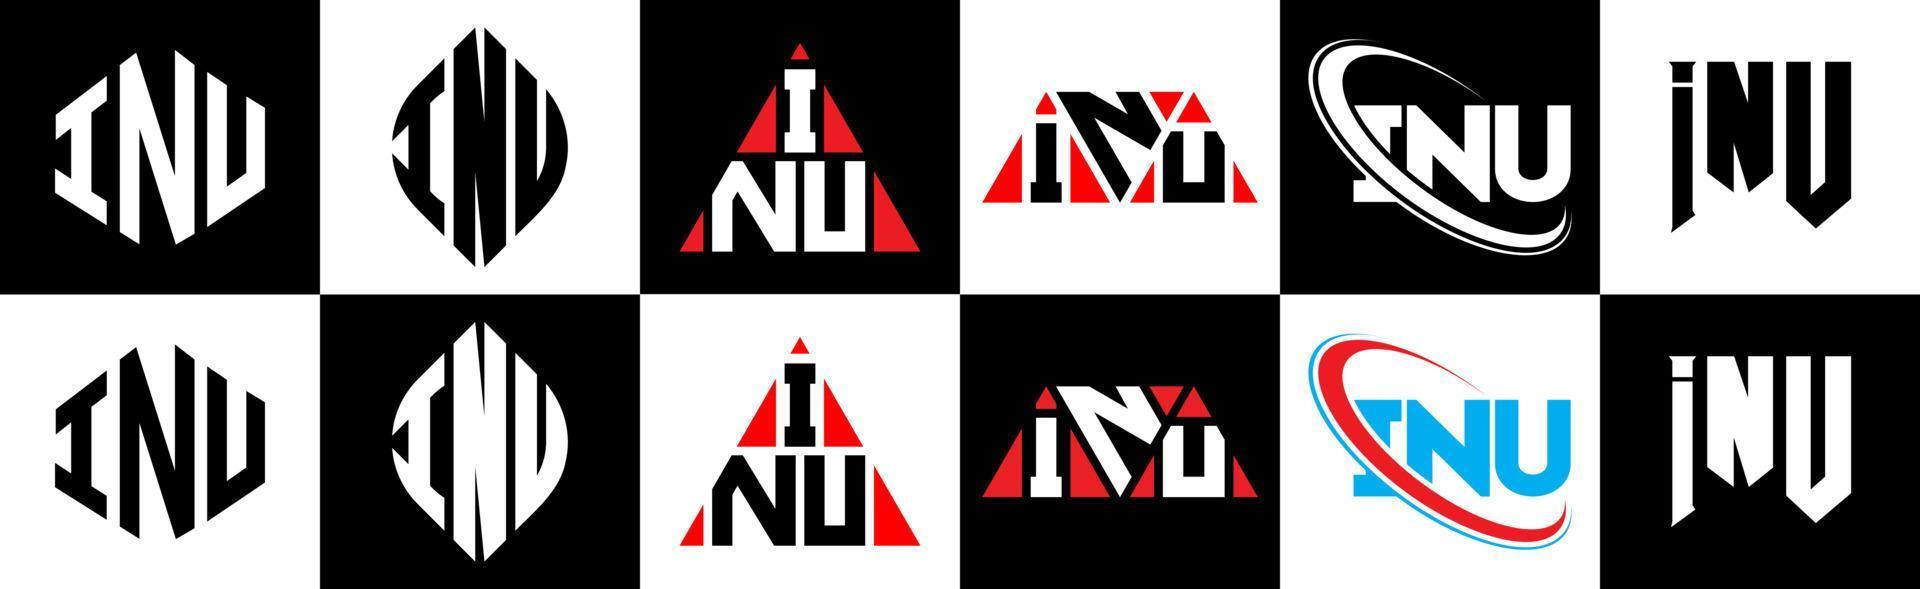 inu-Buchstaben-Logo-Design in sechs Stilen. Inu-Polygon, Kreis, Dreieck, Sechseck, flacher und einfacher Stil mit schwarz-weißem Buchstabenlogo in einer Zeichenfläche. inu minimalistisches und klassisches Logo vektor